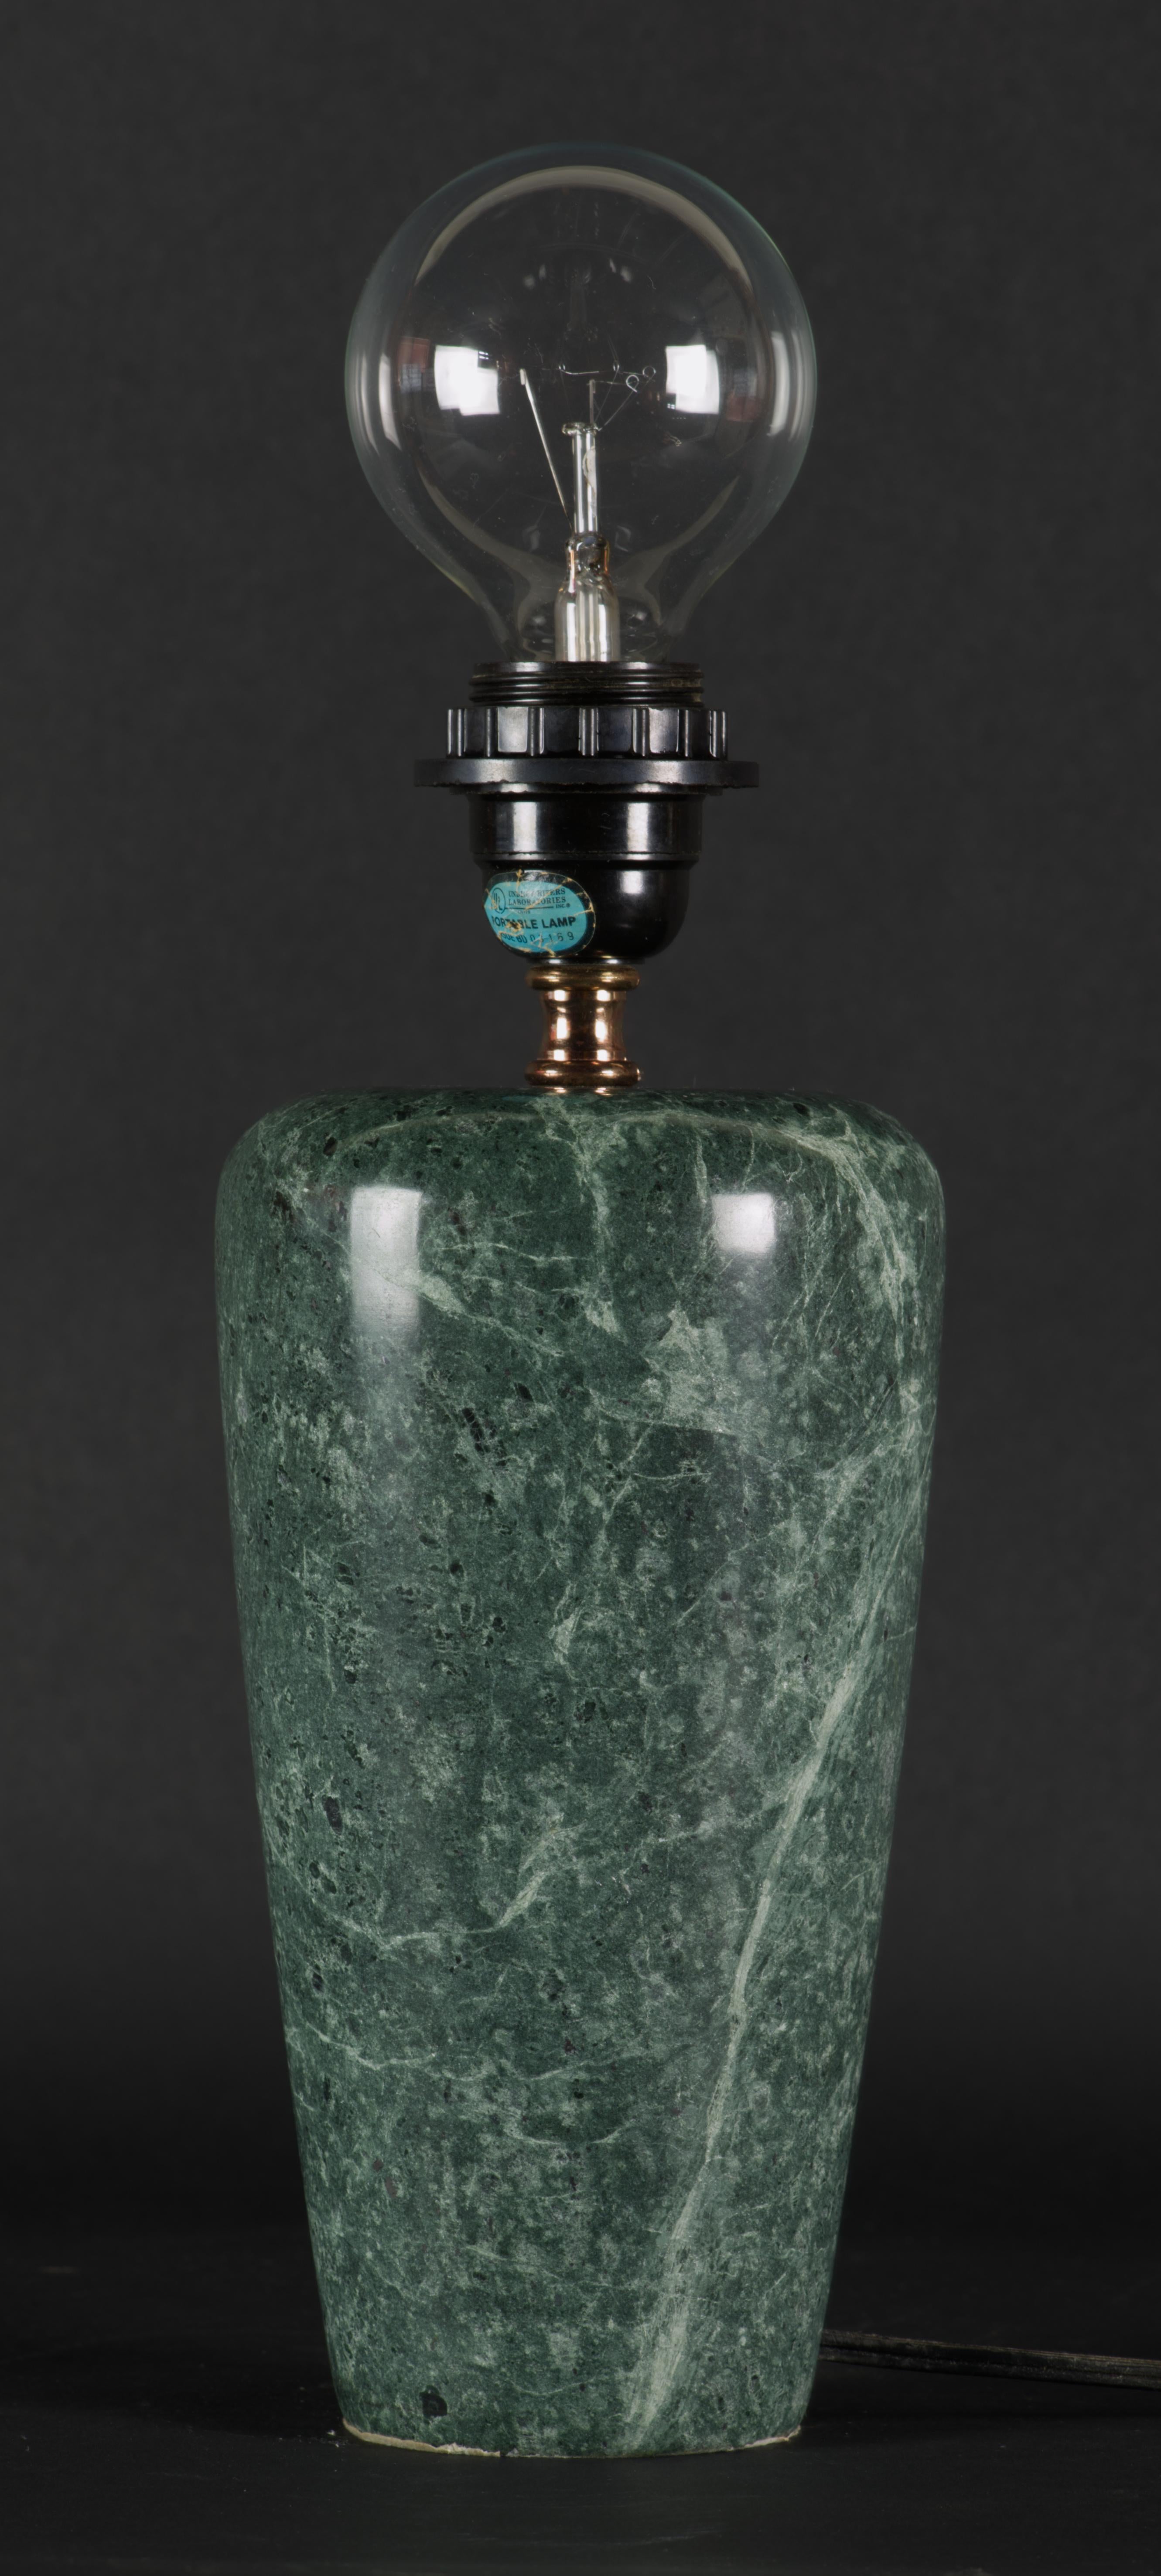 
Die Leuchte hat markante postmoderne Linien und ist aus tiefgrünem Marmor mit hellgrüner Maserung gefertigt.

Der Schoß ist 12